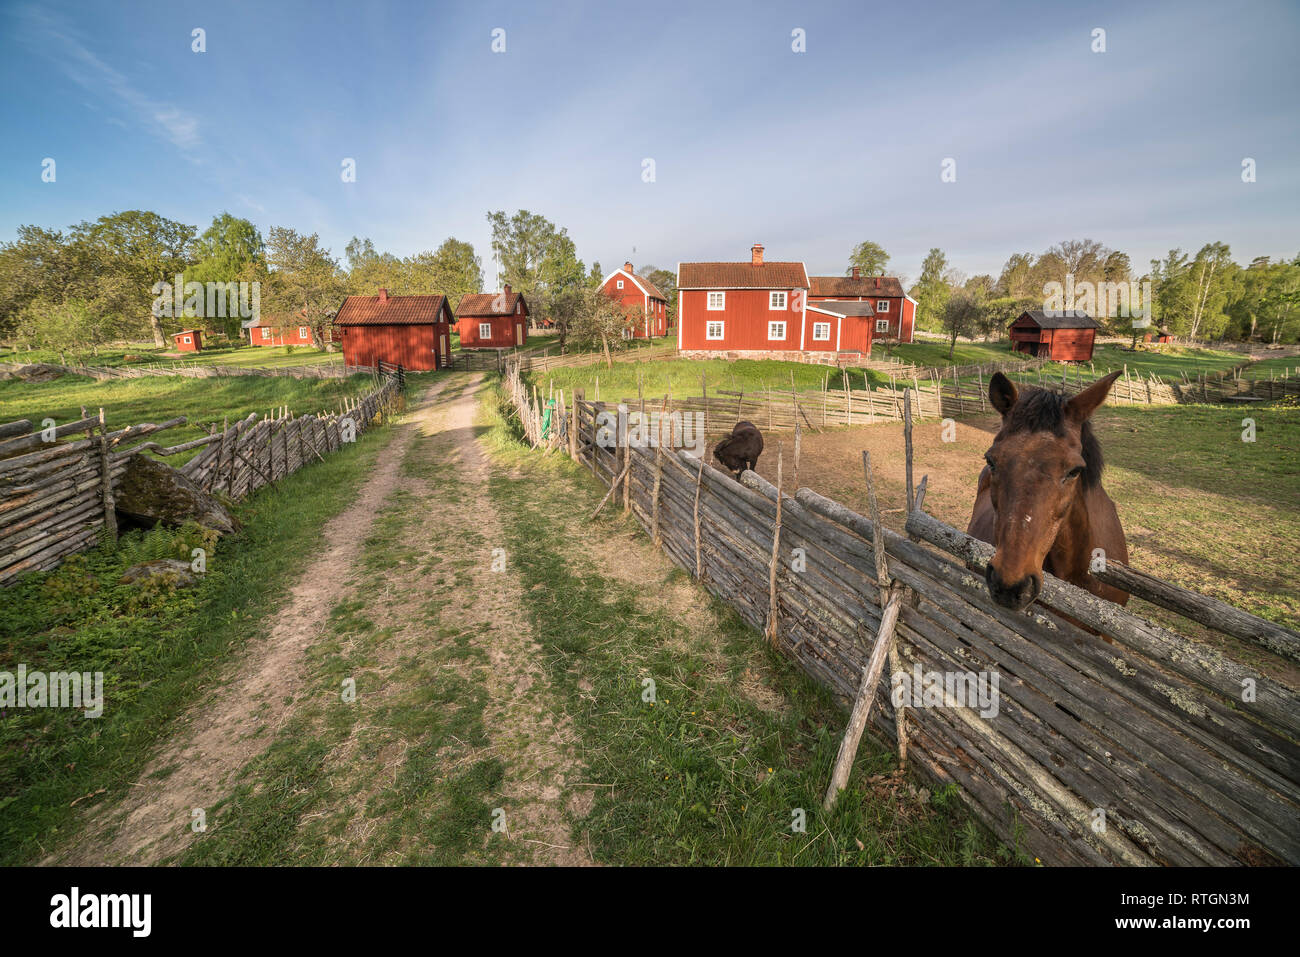 Cheval et roundpole traditionnelle clôture dans un paysage rural avec le village par Stensjo dans l'arrière-plan. Pays-bas, Suède, Scandinavie Banque D'Images